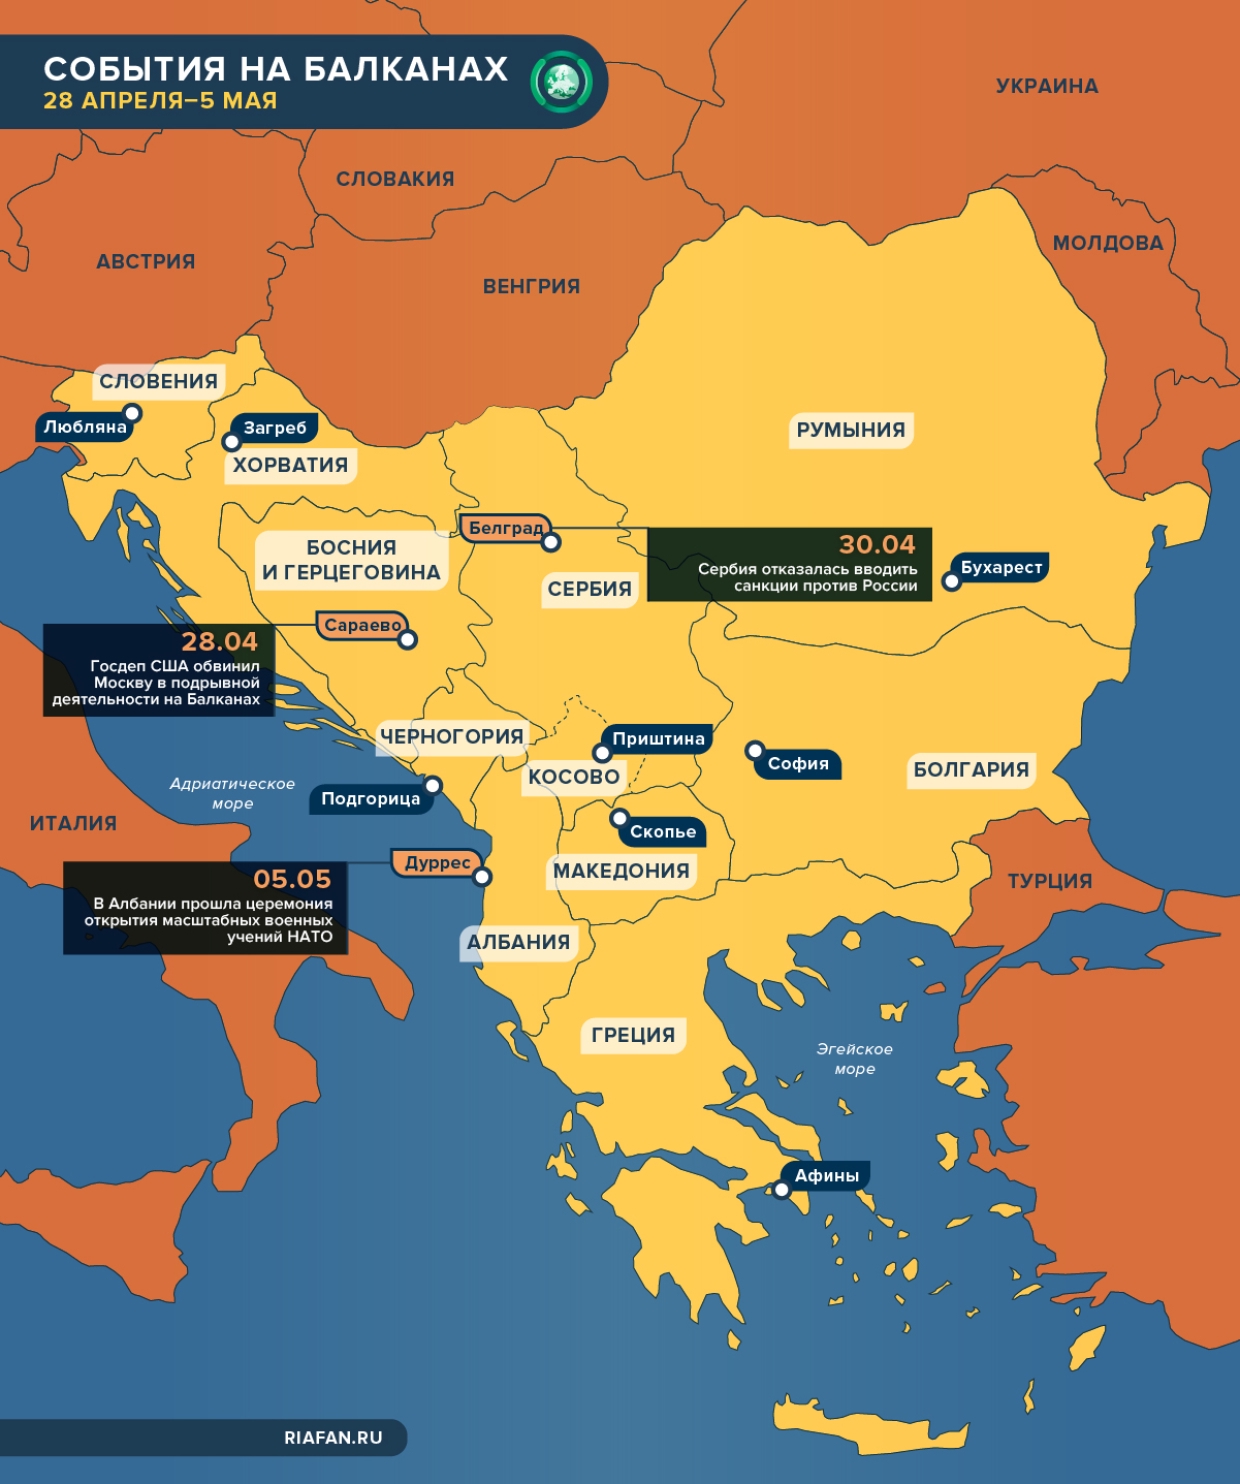 Подрывная деятельность, солдаты НАТО и санкции против РФ — что происходило на Балканах